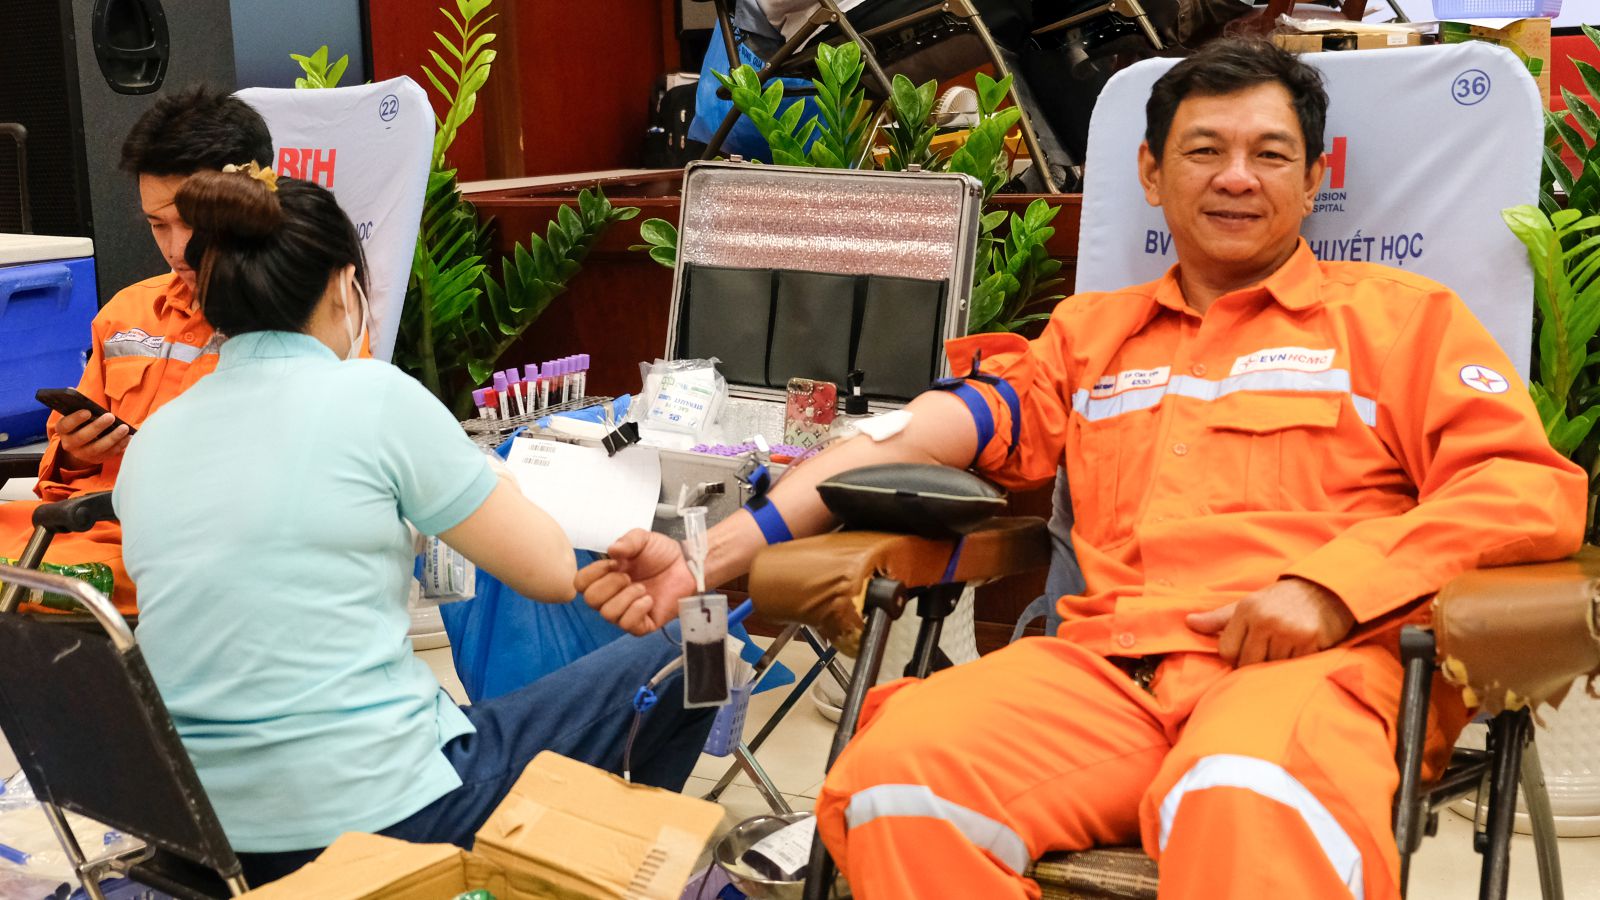 Hình: Người lao động trong EVNHCMC hiến máu tình nguyện – một hoạt động trong Tháng tri ân khách hàng của ngành điện. (Nguồn: EVN HCMC)